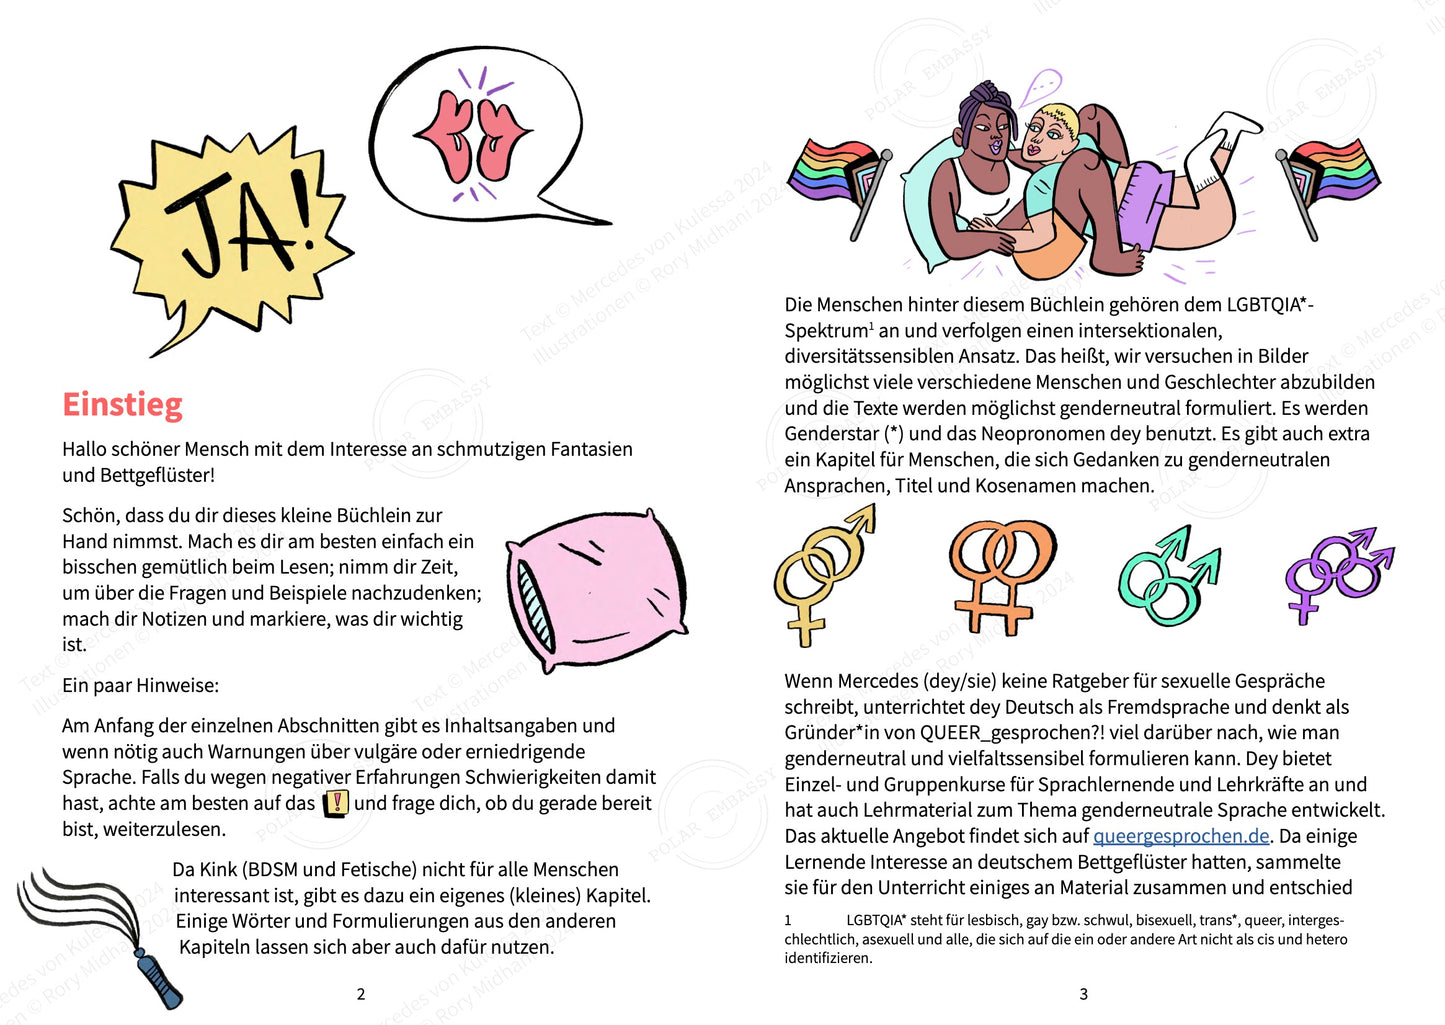 Beispiel für eine Doppelseite aus dem illustrierten Arbeitsbuch "Bettgeflüster". Es gibt ein Cartoon-Paar, das sich zwischen inklusiven Pride-Flaggen kuschelt, sowie Geschlechtersymbole, die weiblich/männlich, weiblich/weiblich, männlich/männlich und weiblich/männlich/männlich zeigen.